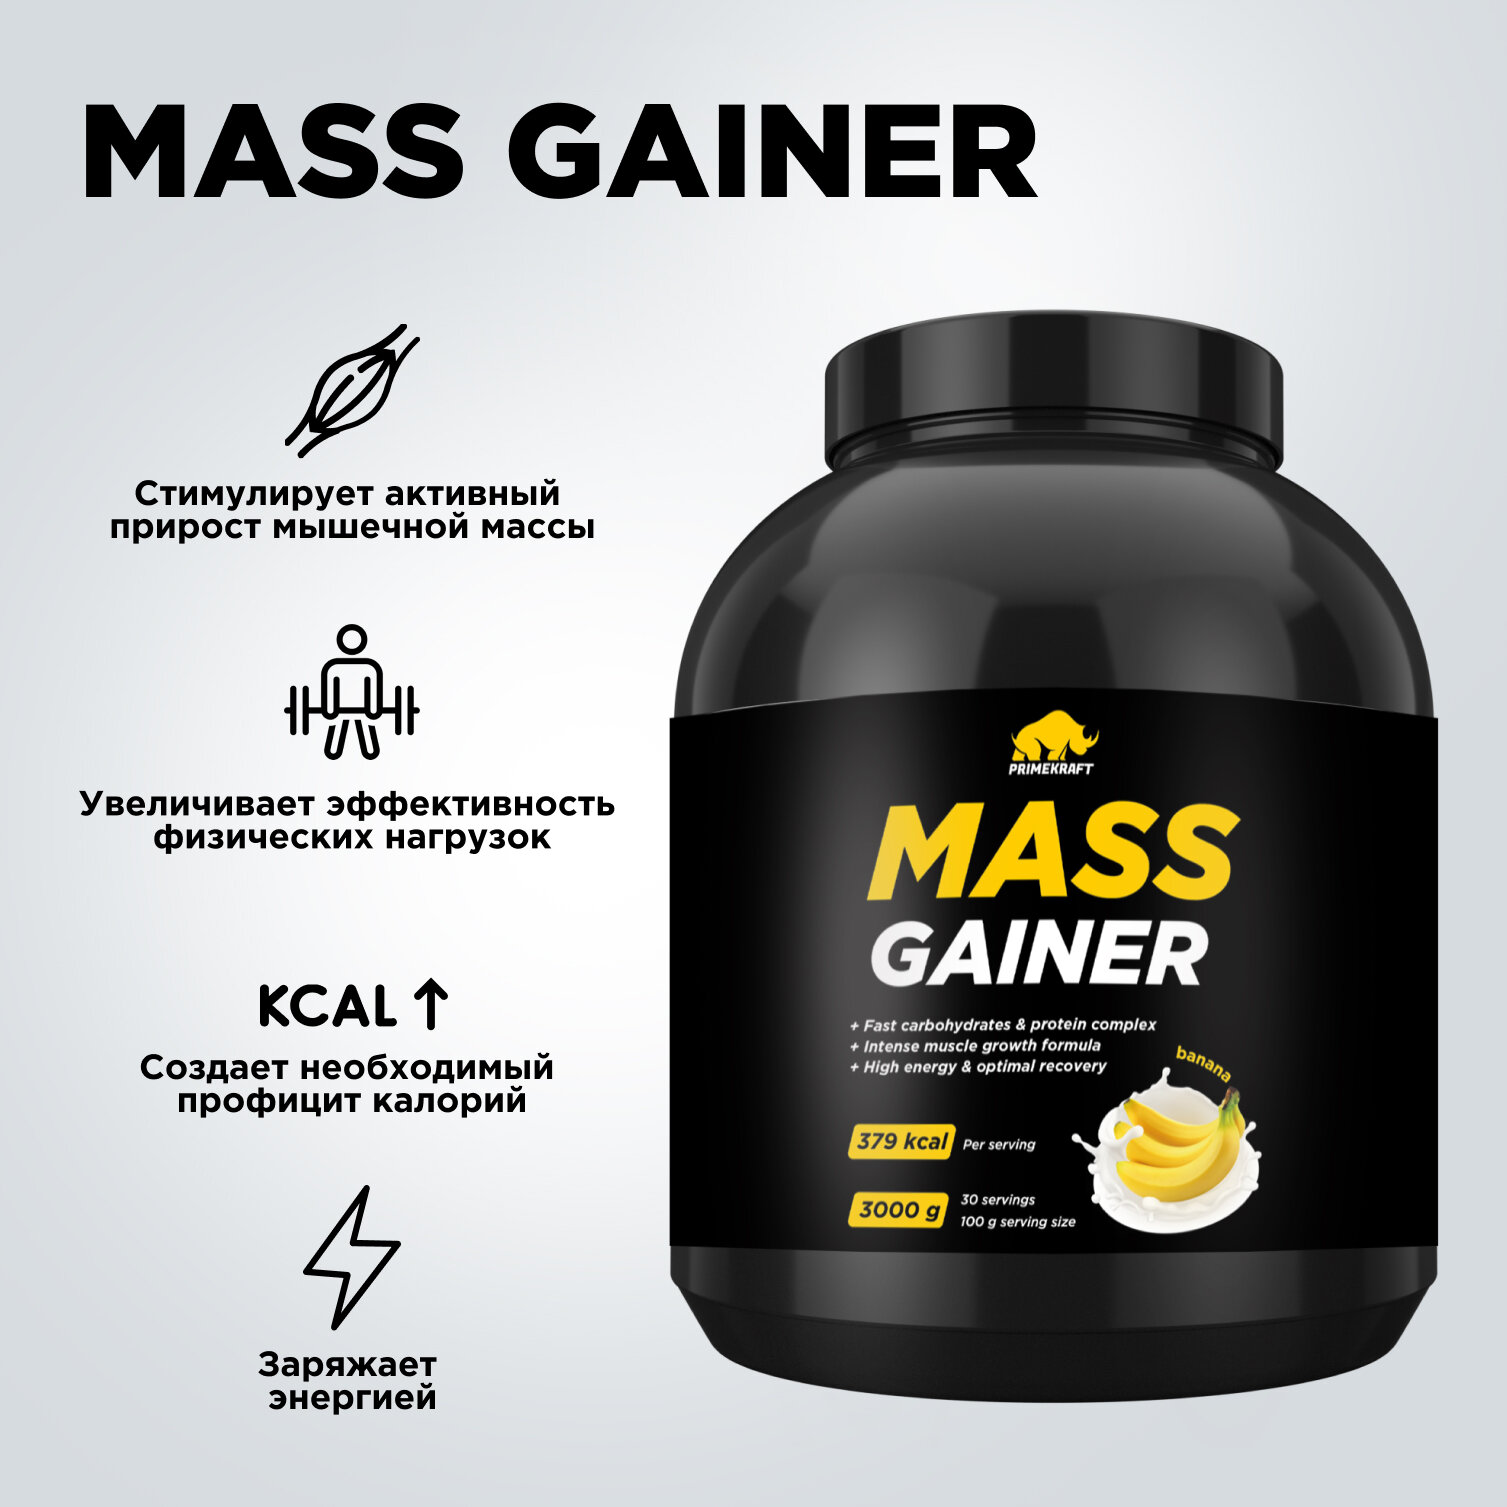 Гейнер белково-углеводный Prime Kraft MASS GAINER для набора массы - Банан банка 3000 гр